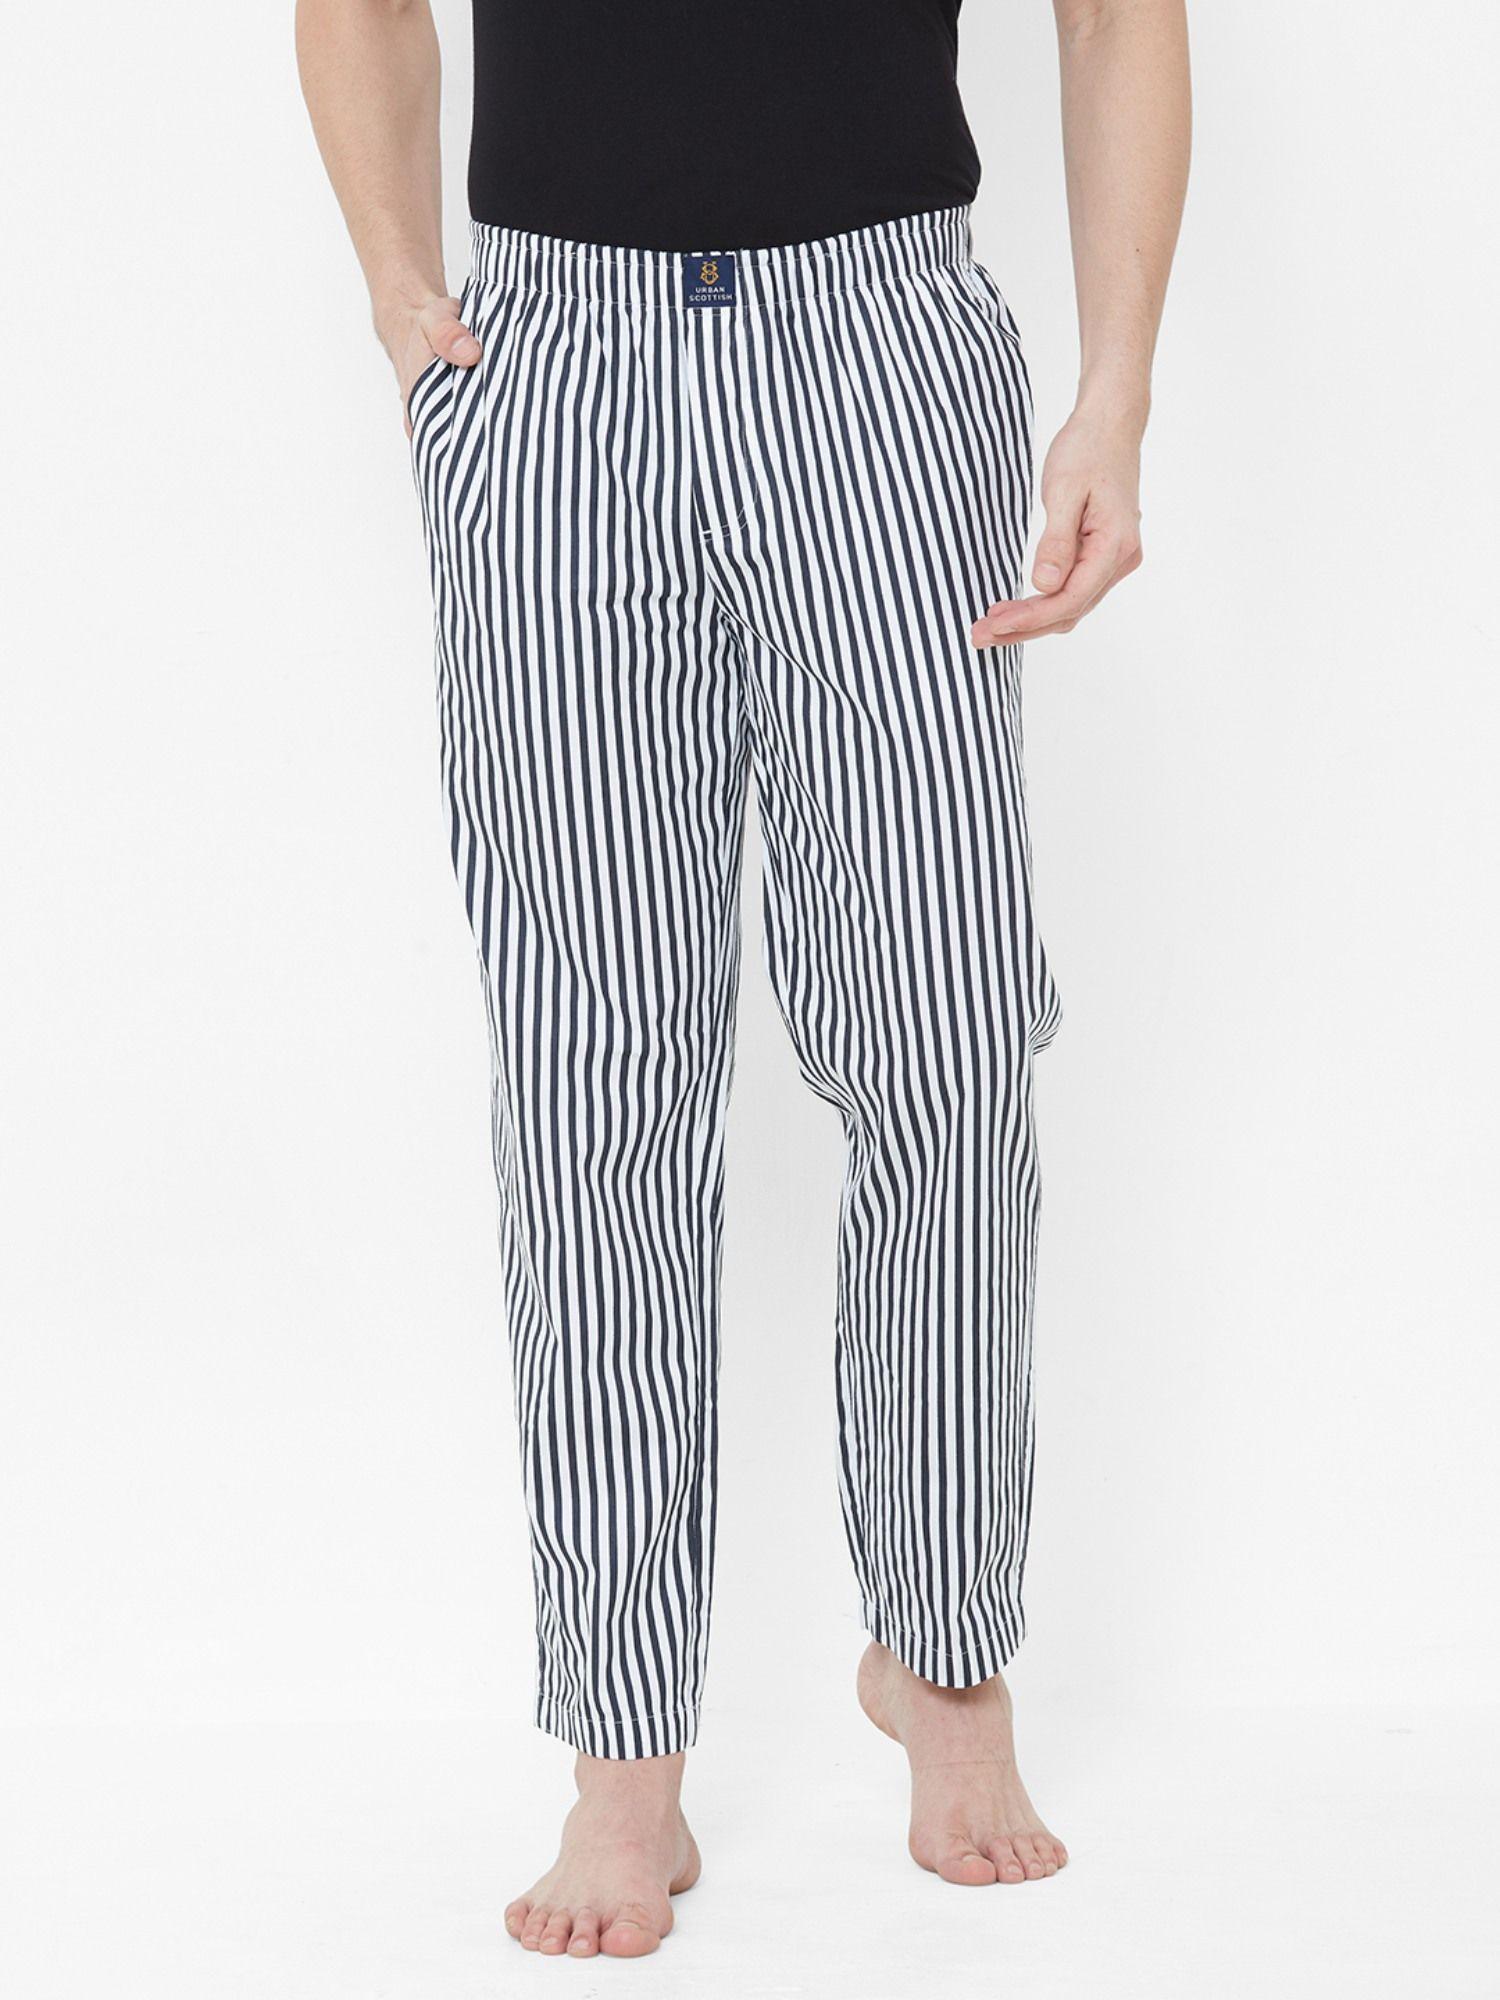 mens multi-colored pure cotton striped pyjama